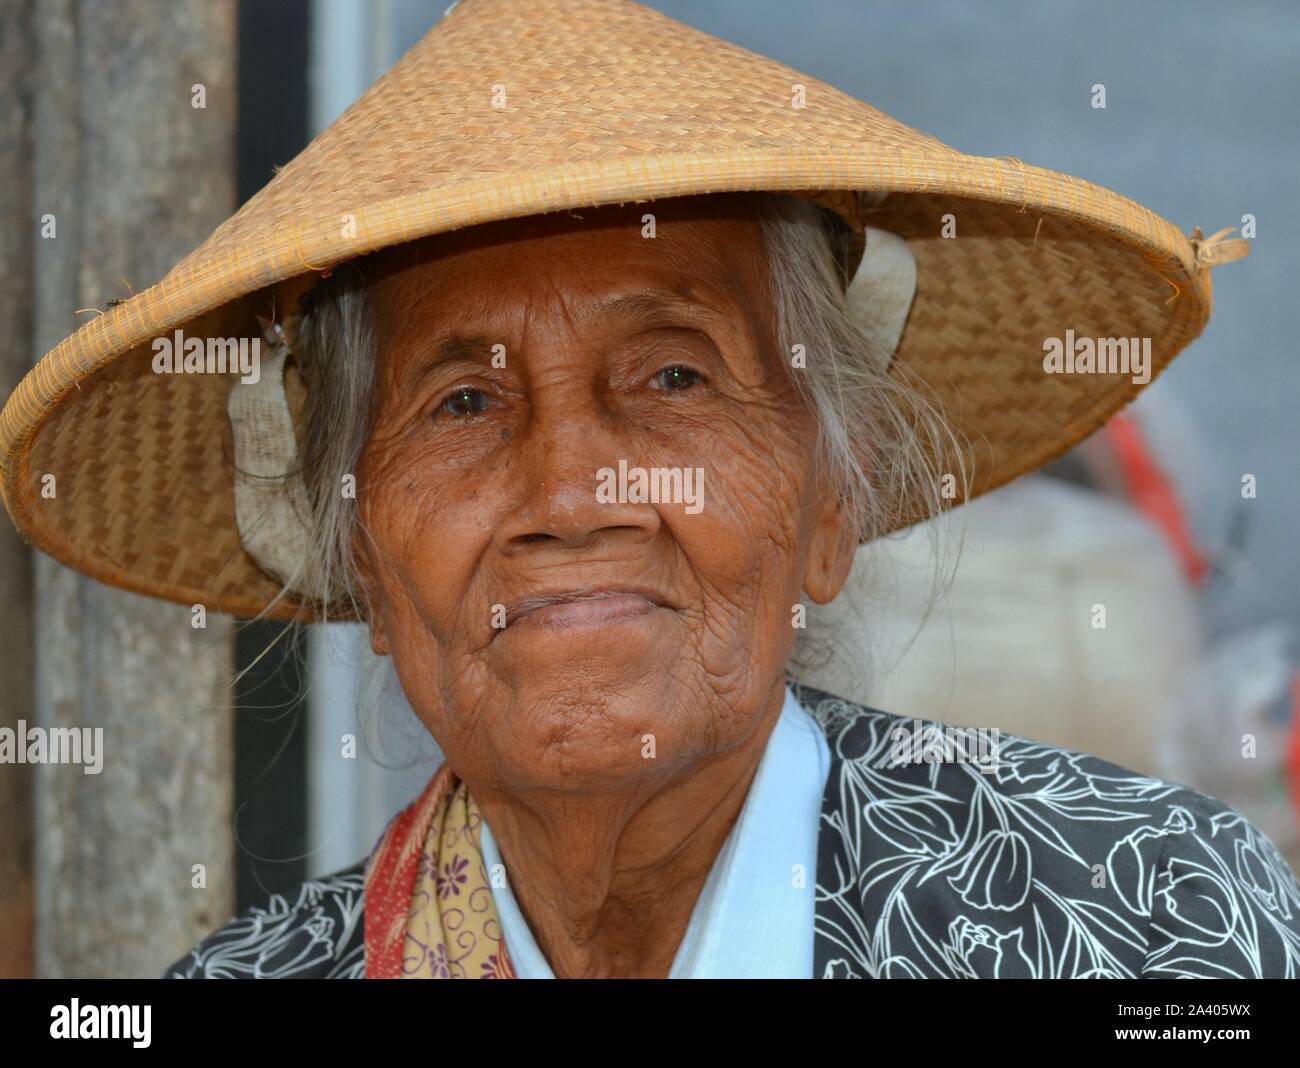 Vieux marché javanais femme porte un chapeau de paille conique asiatiques (caping). Banque D'Images